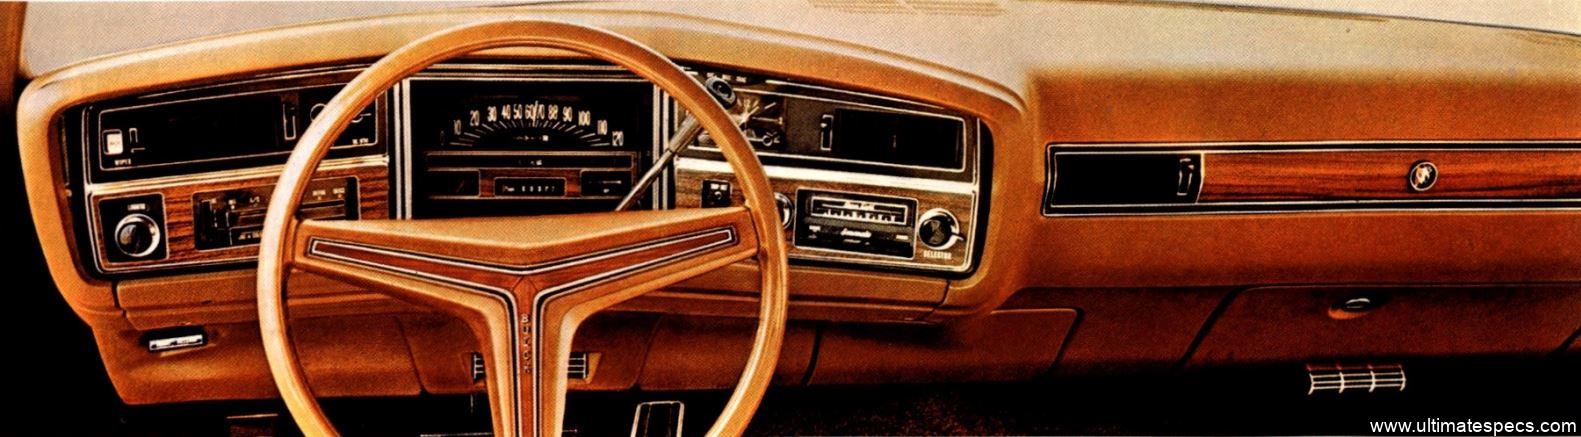 Buick Centurion 4-Door Hardtop 1972